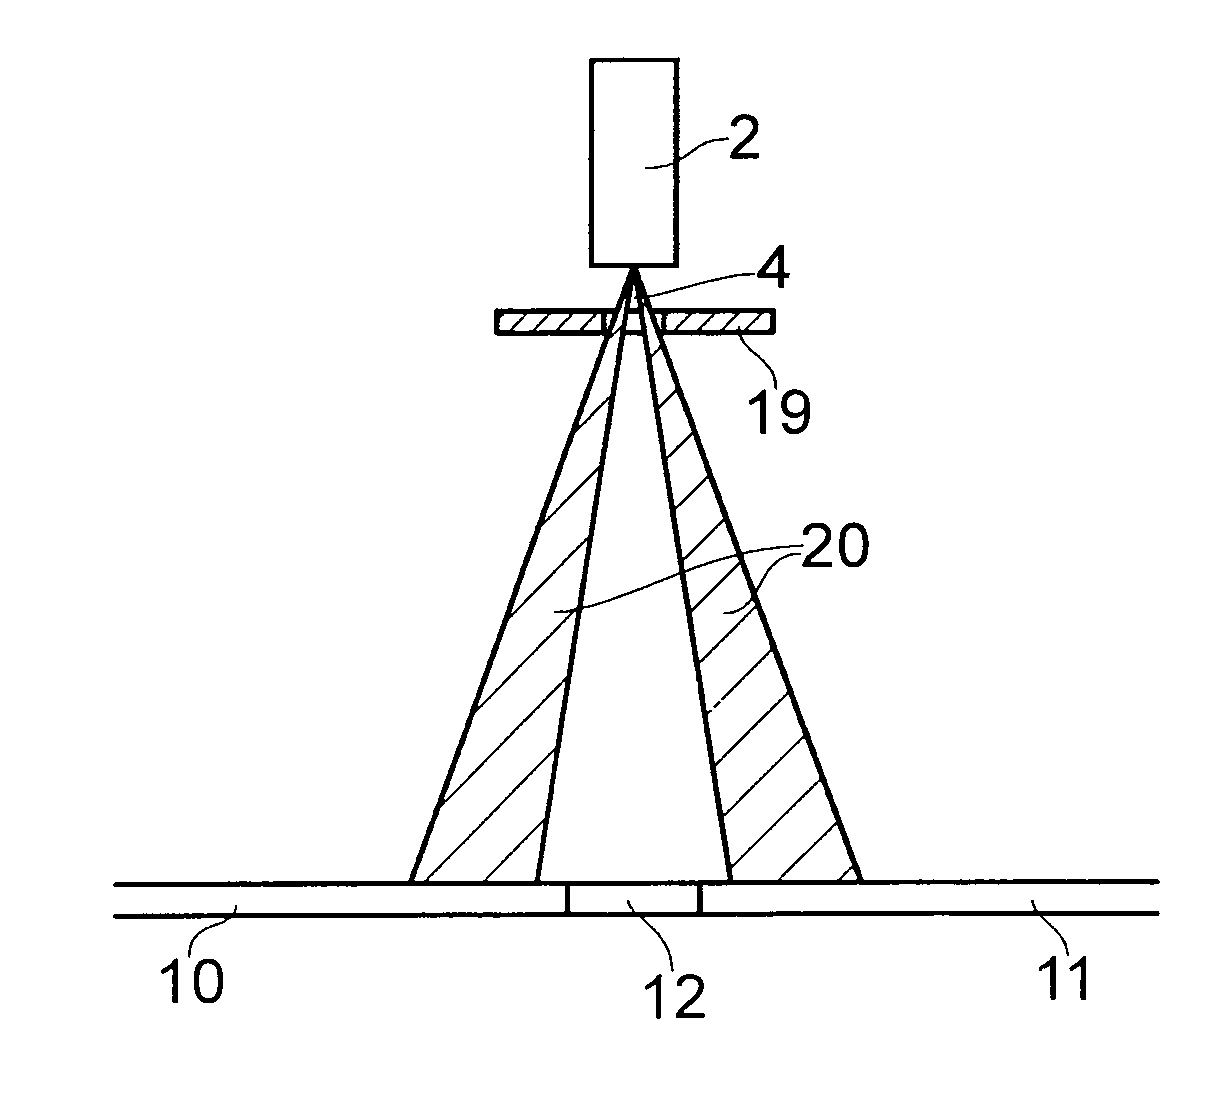 Optical triangulation sensor